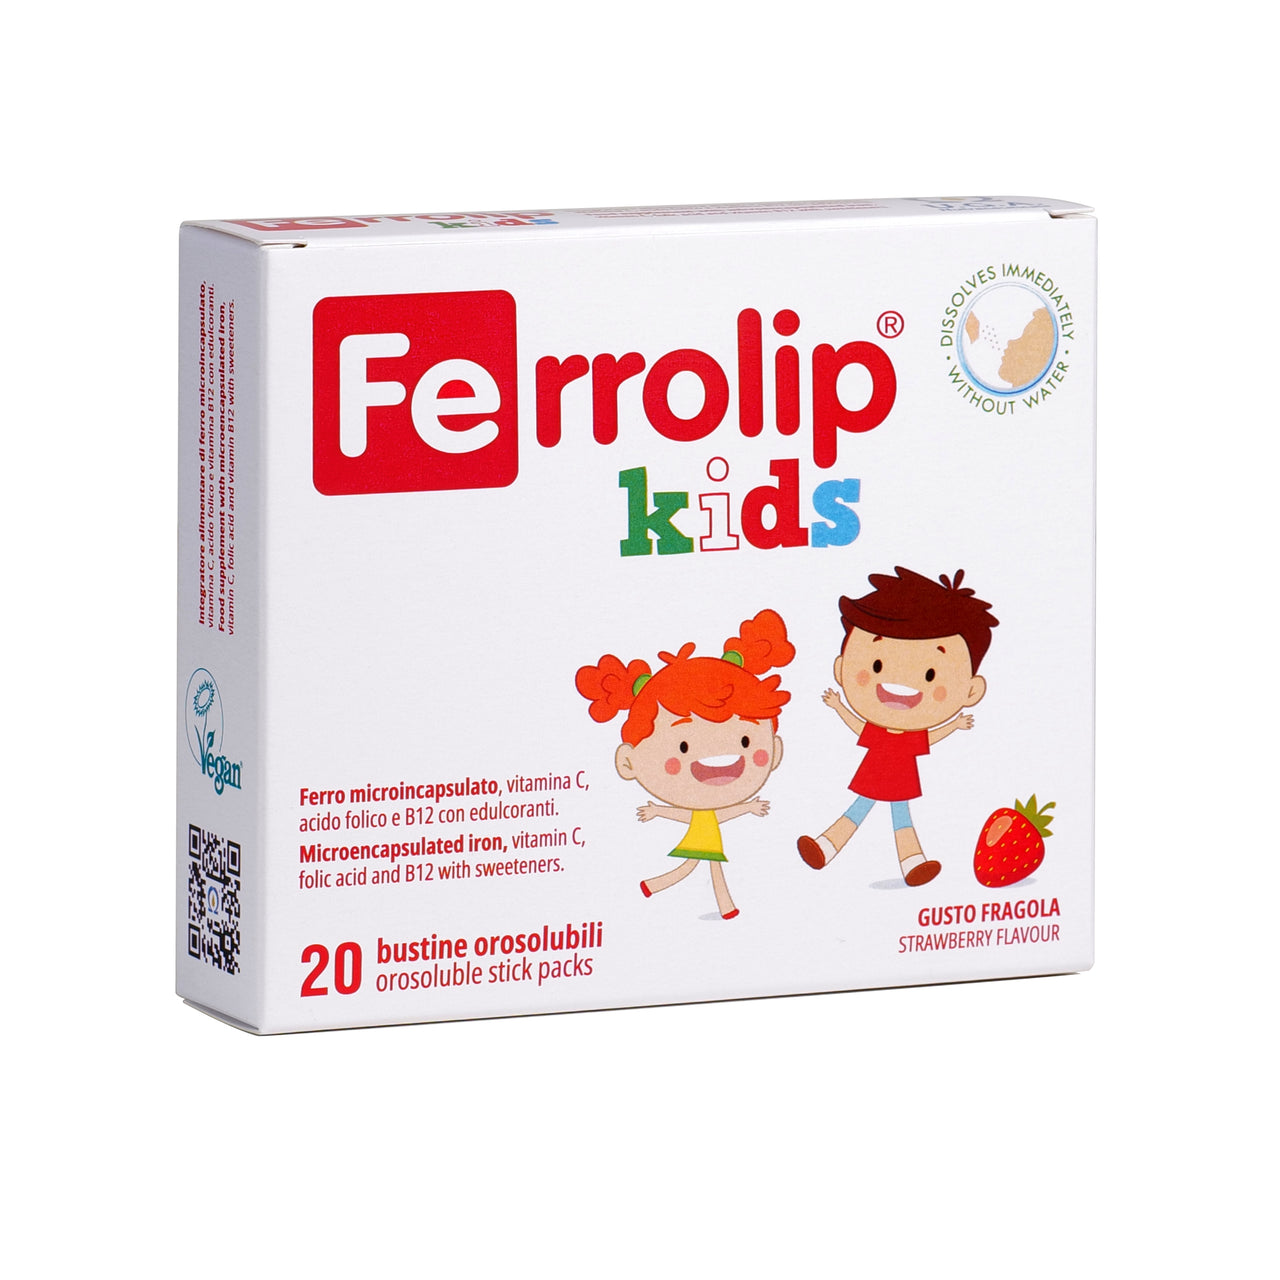 Ferrolip® Kids